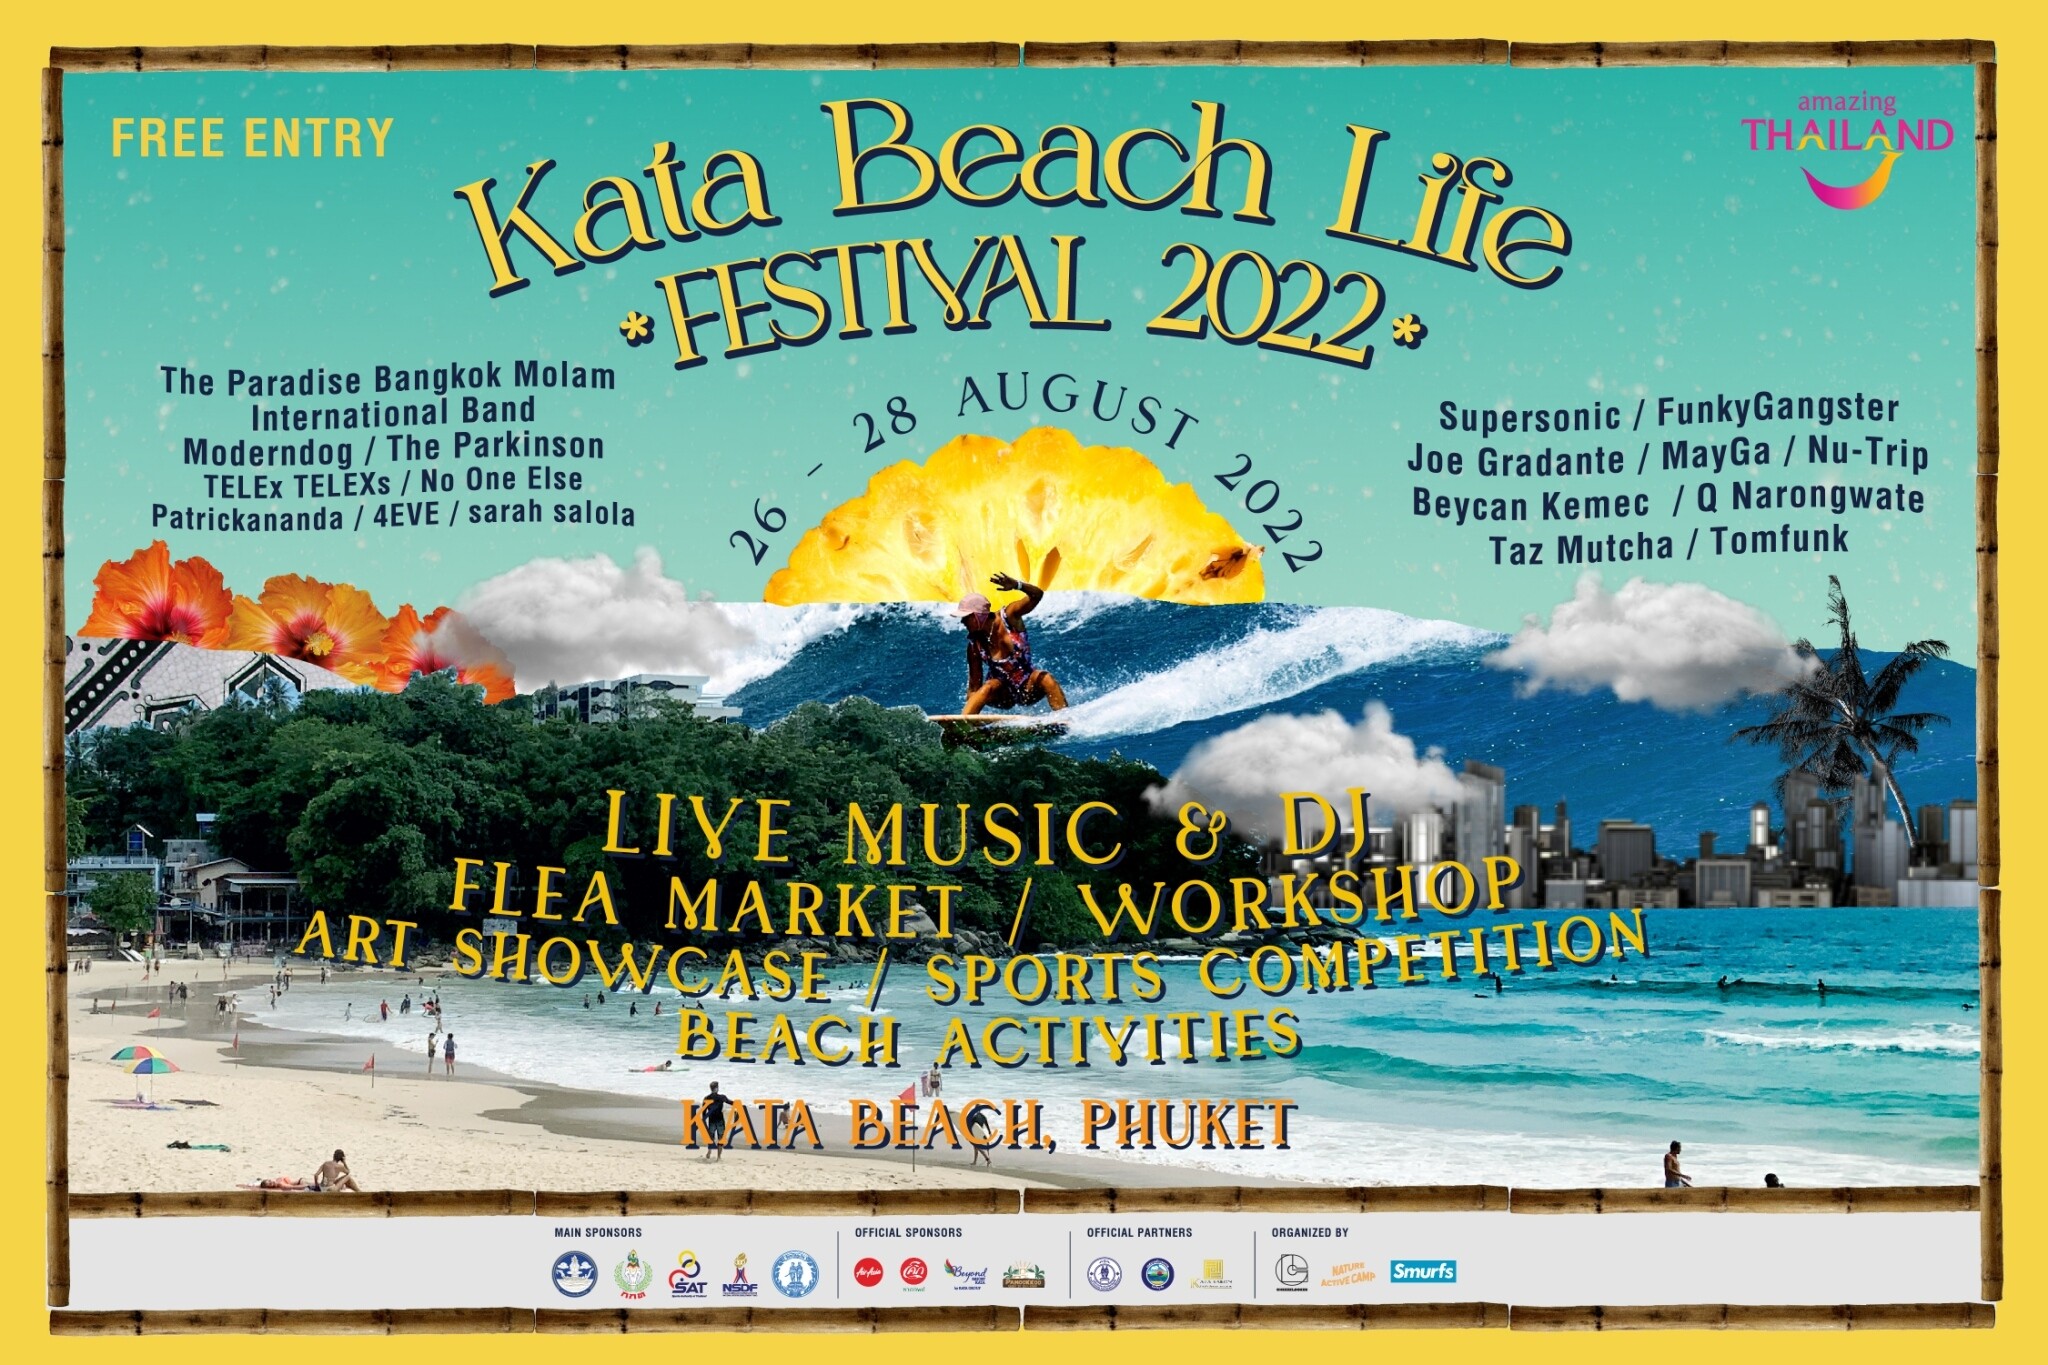 Kata Beach Life Festival 2022 เทศกาลสุดชิลล์ริมหาดกะตะ ที่อยากคุณชวนมา